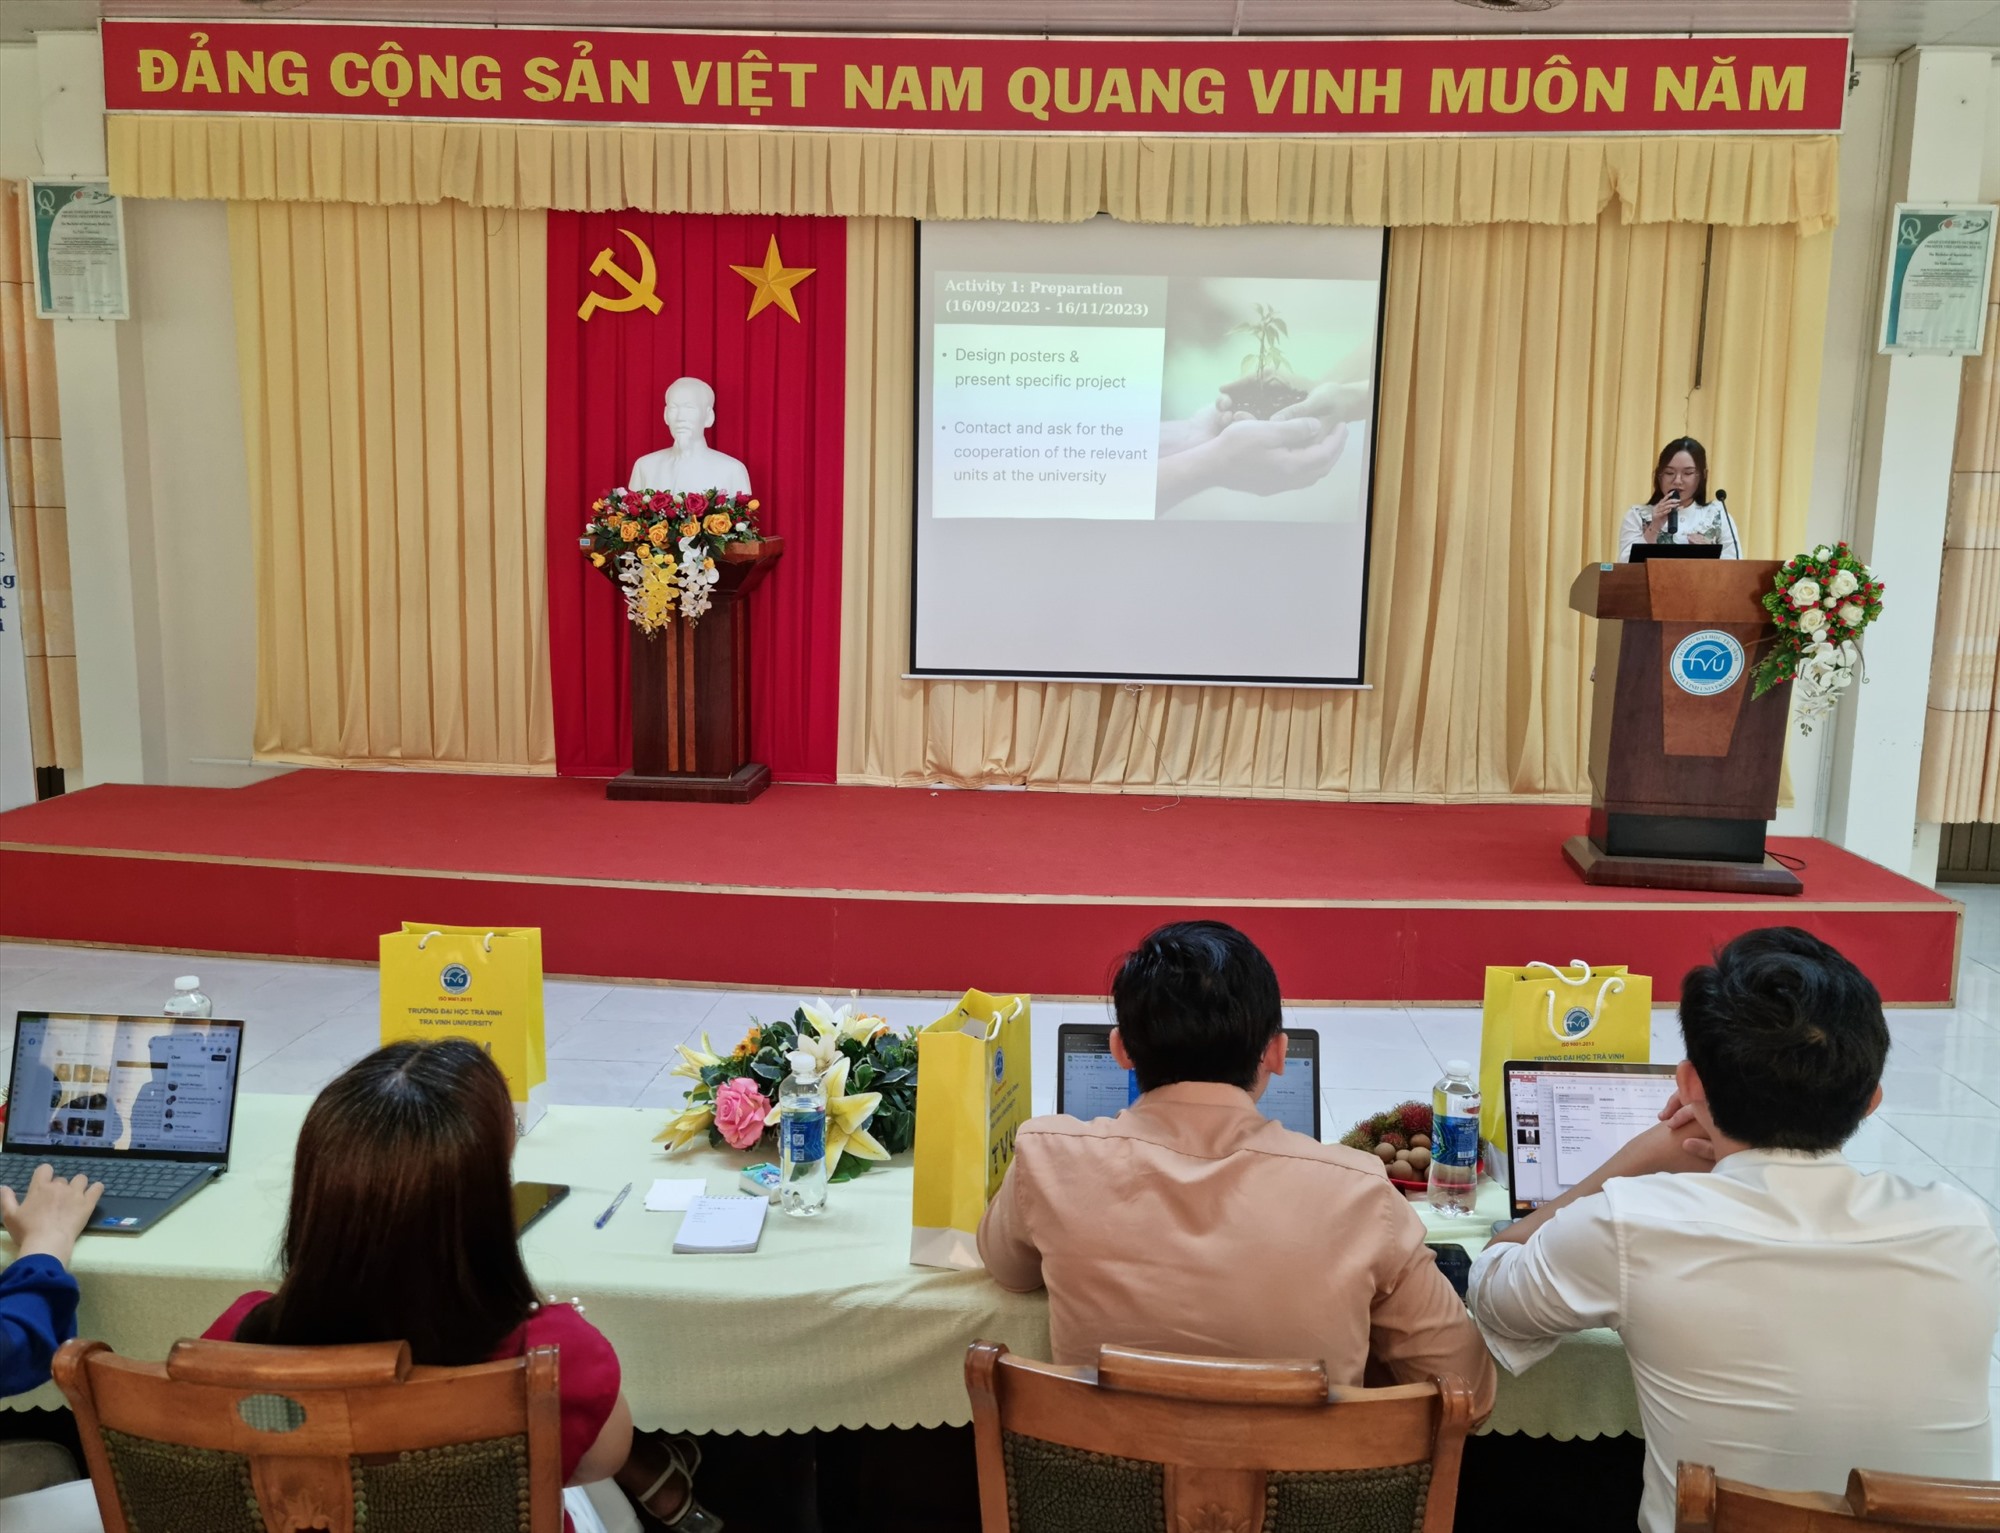 Sinh viên đại học Trà Vinh trình bày dự án bảo vệ môi trường bằng tiếng Anh kêu gọi tài trợ các tổ chức phi chính phủ. Ảnh: Hoàng Lộc